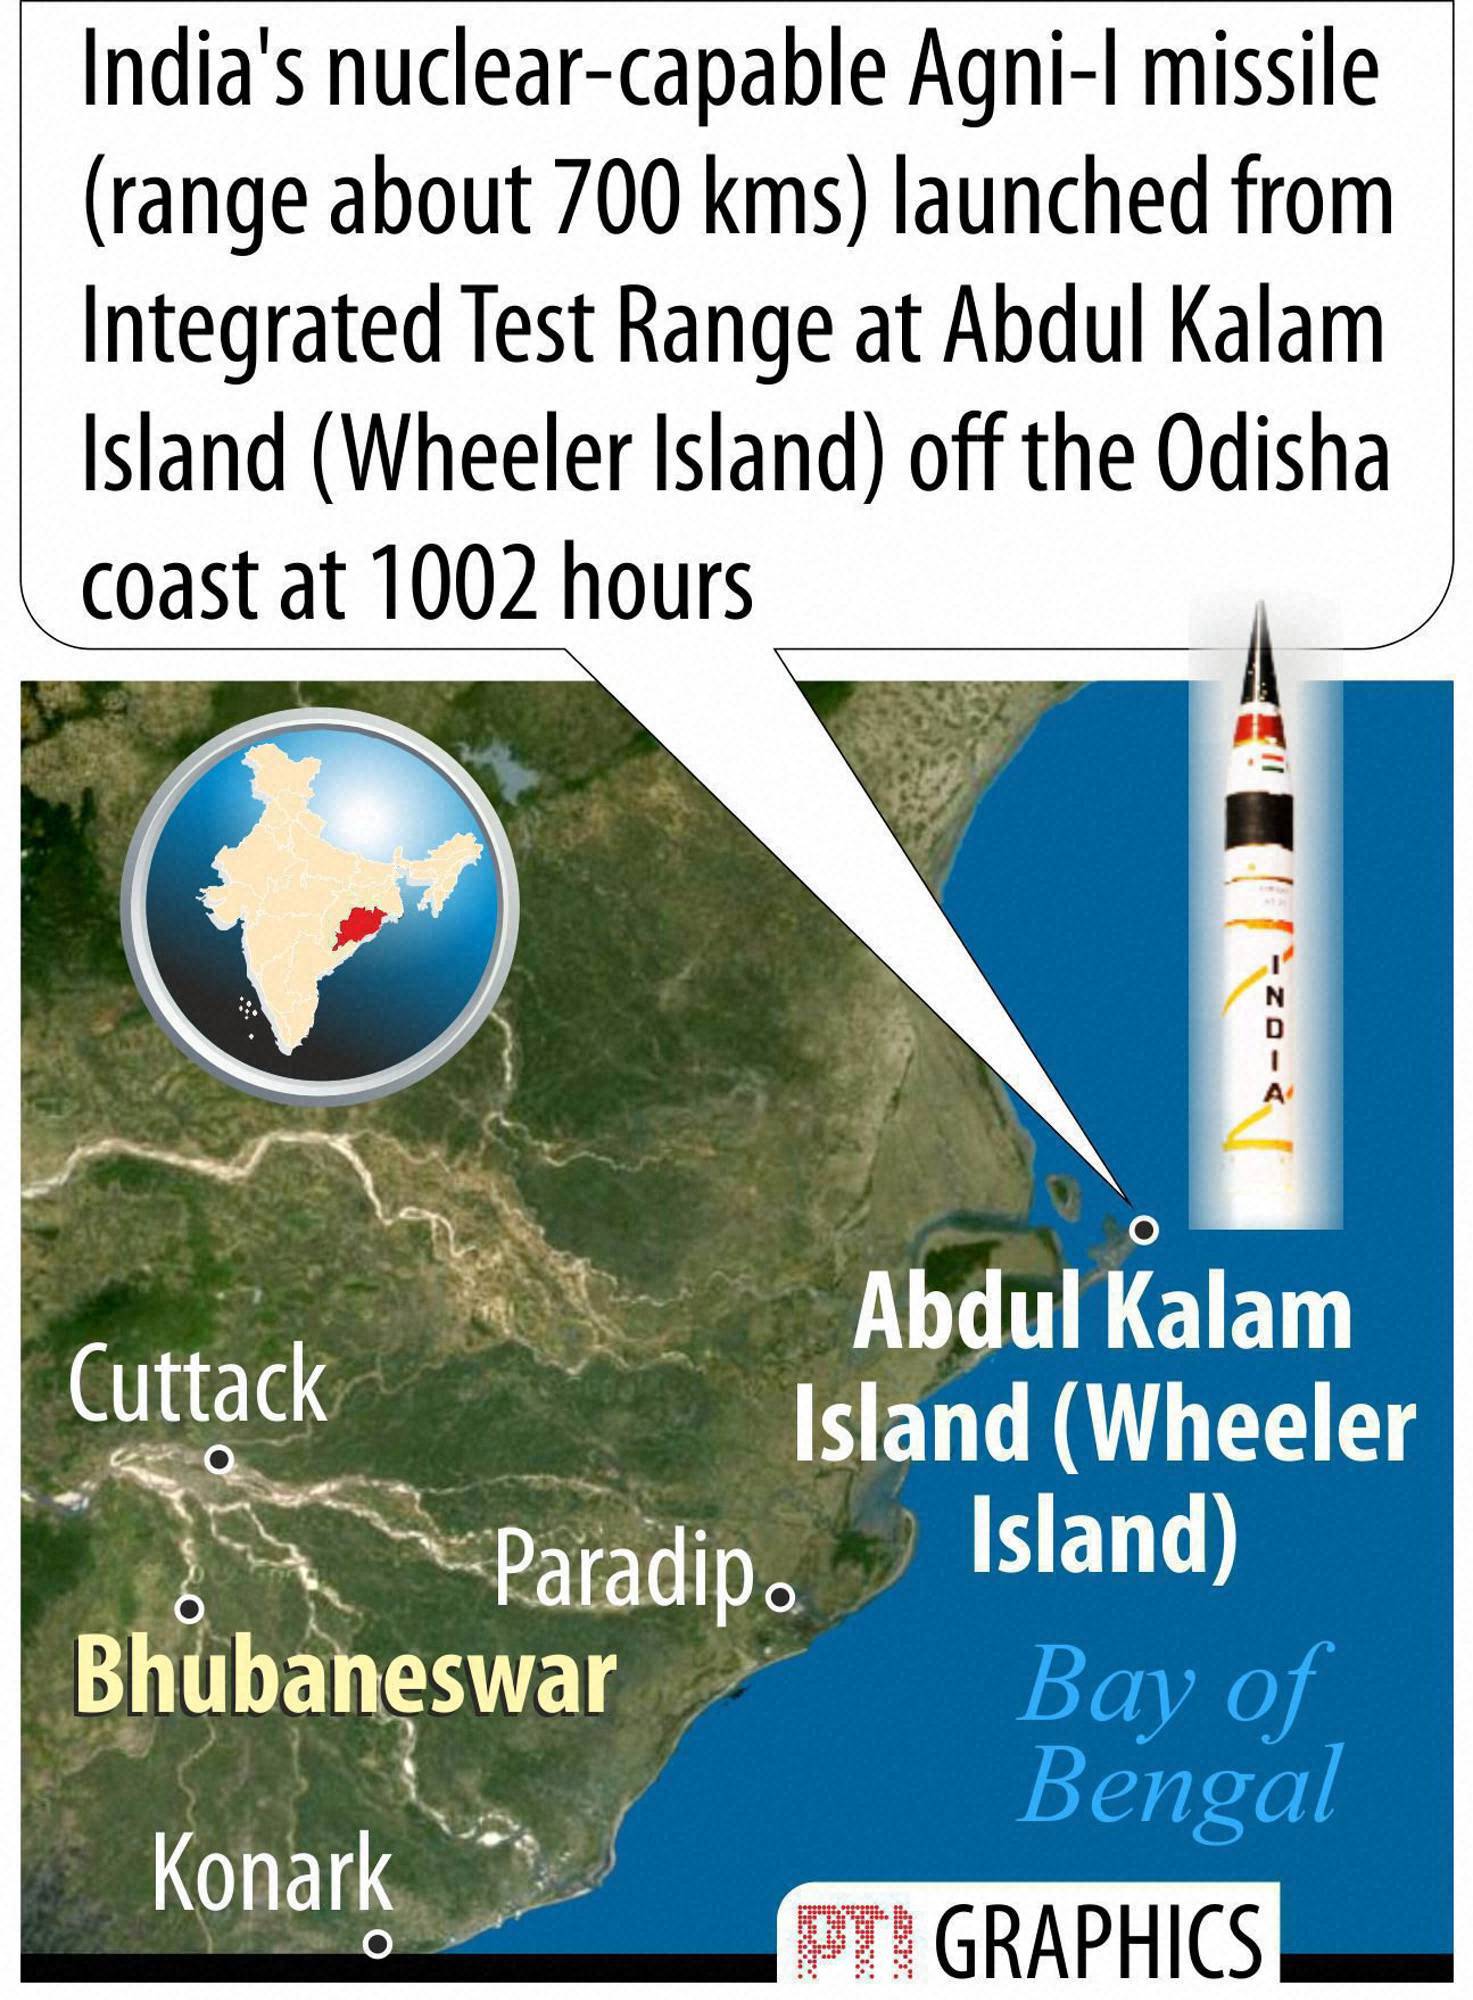 India Successfully Test-Fires Agni-I Missile Off Coast In Odisha